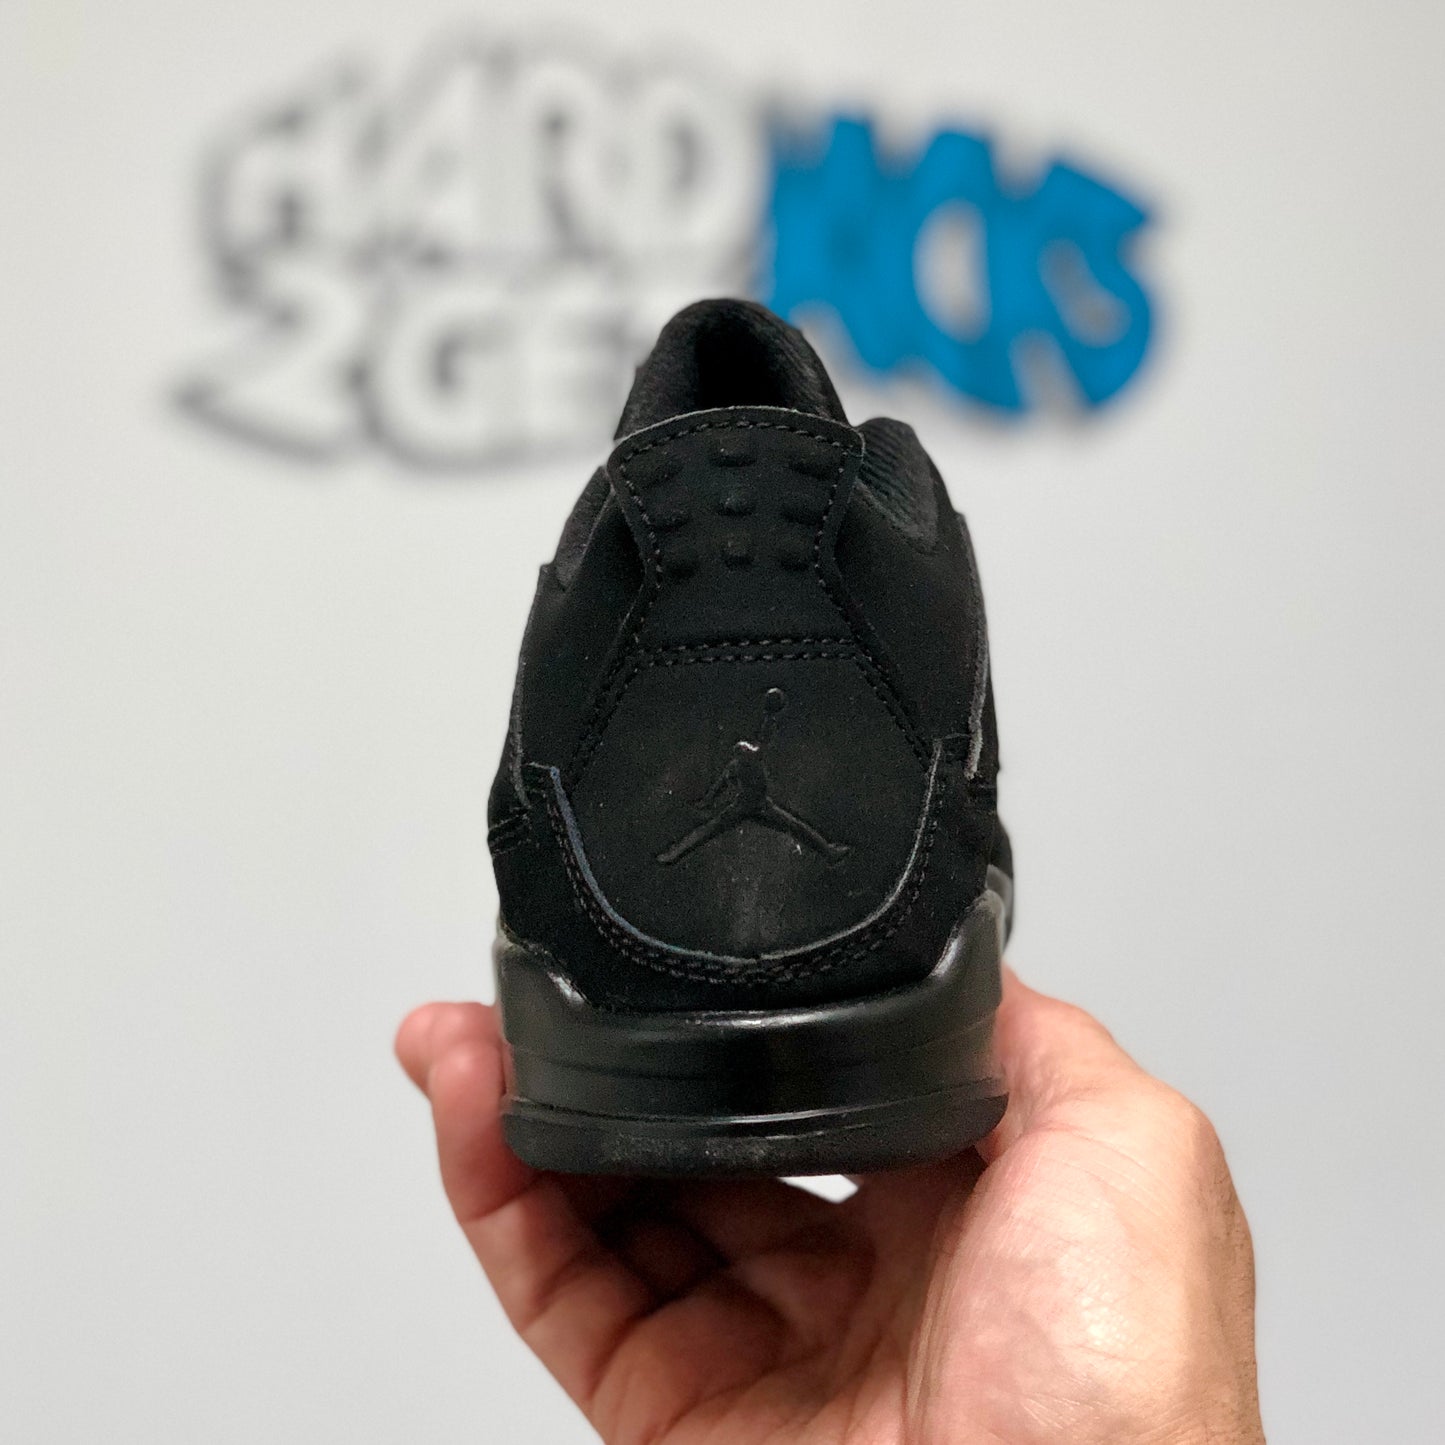 Air Jordan 4 Retro PS - Black Cats